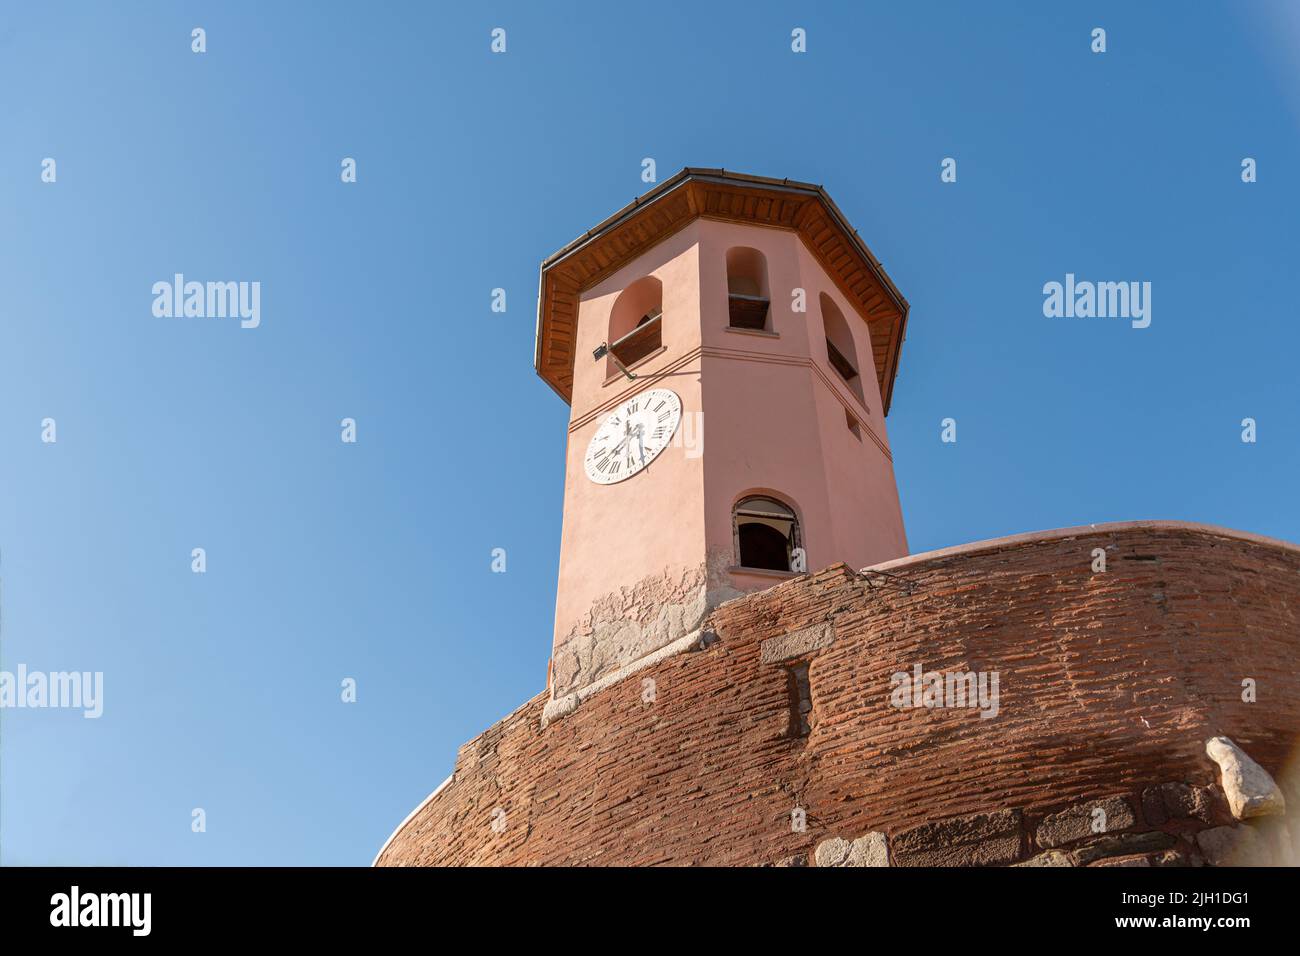 L'horloge historique du château d'Ankara à Ankara, la capitale de la Turquie. Banque D'Images